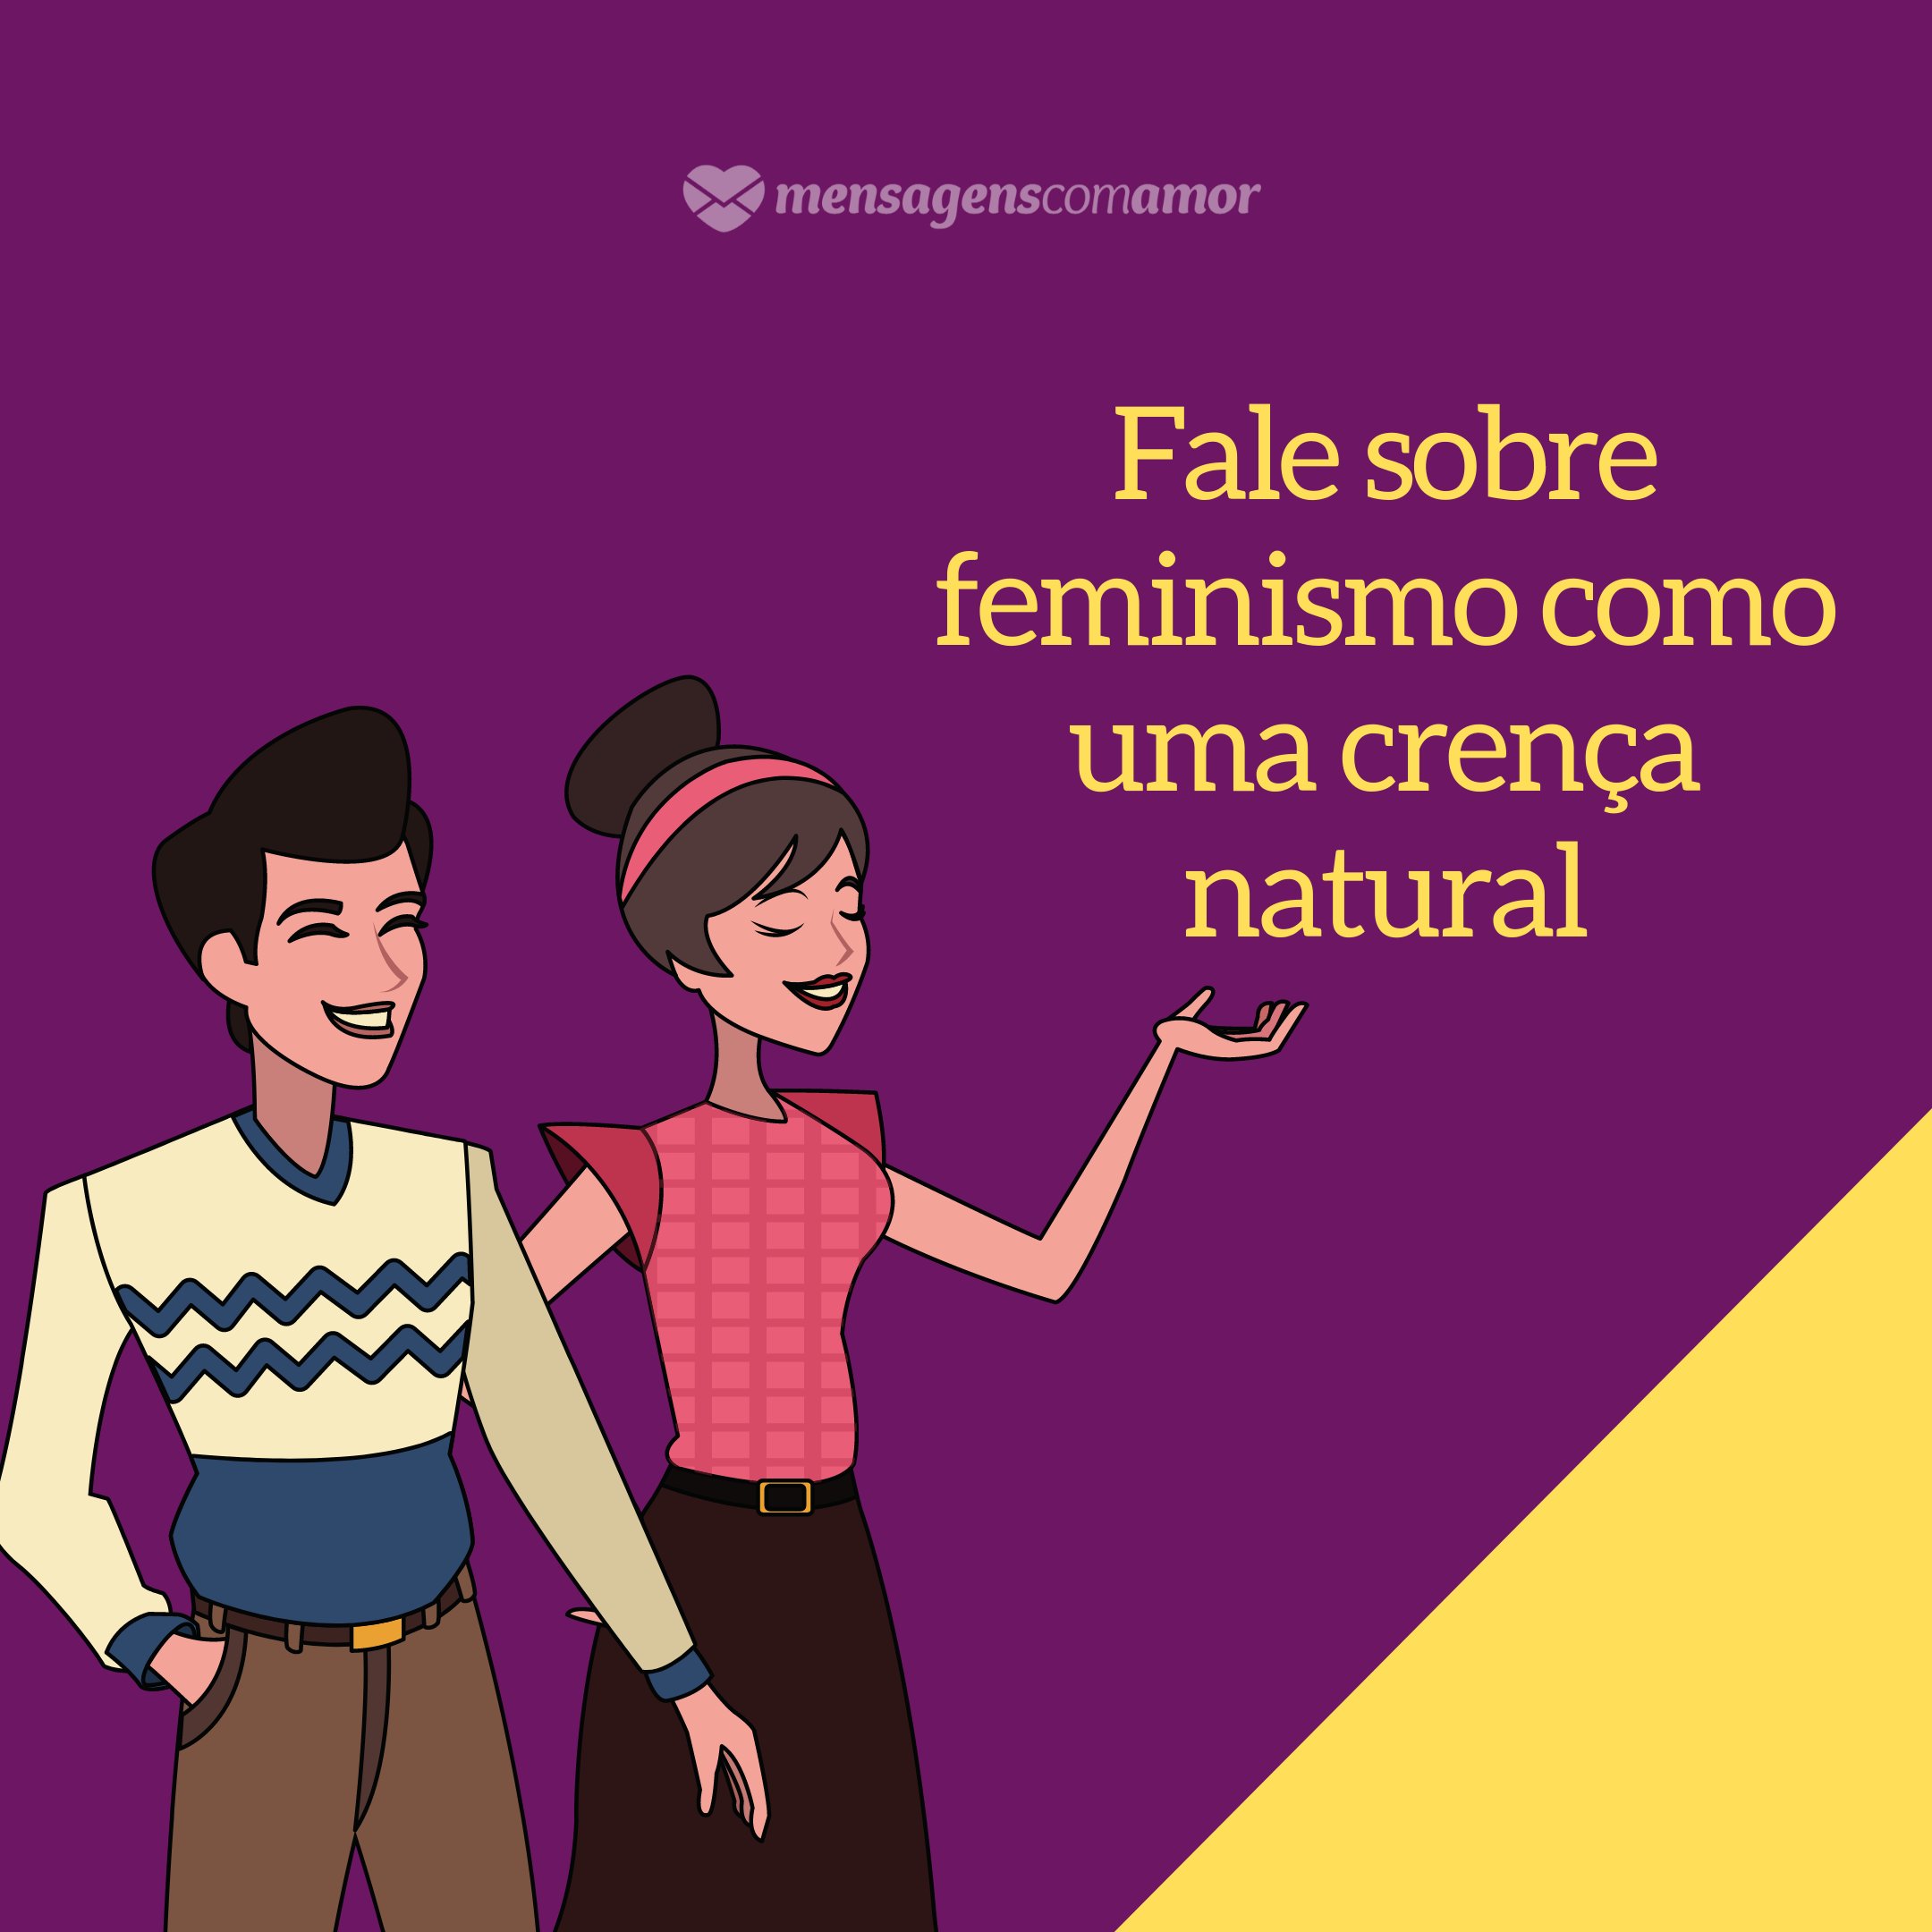 'Fale sobre feminismo como uma crença natural' - Para homens a favor do feminismo